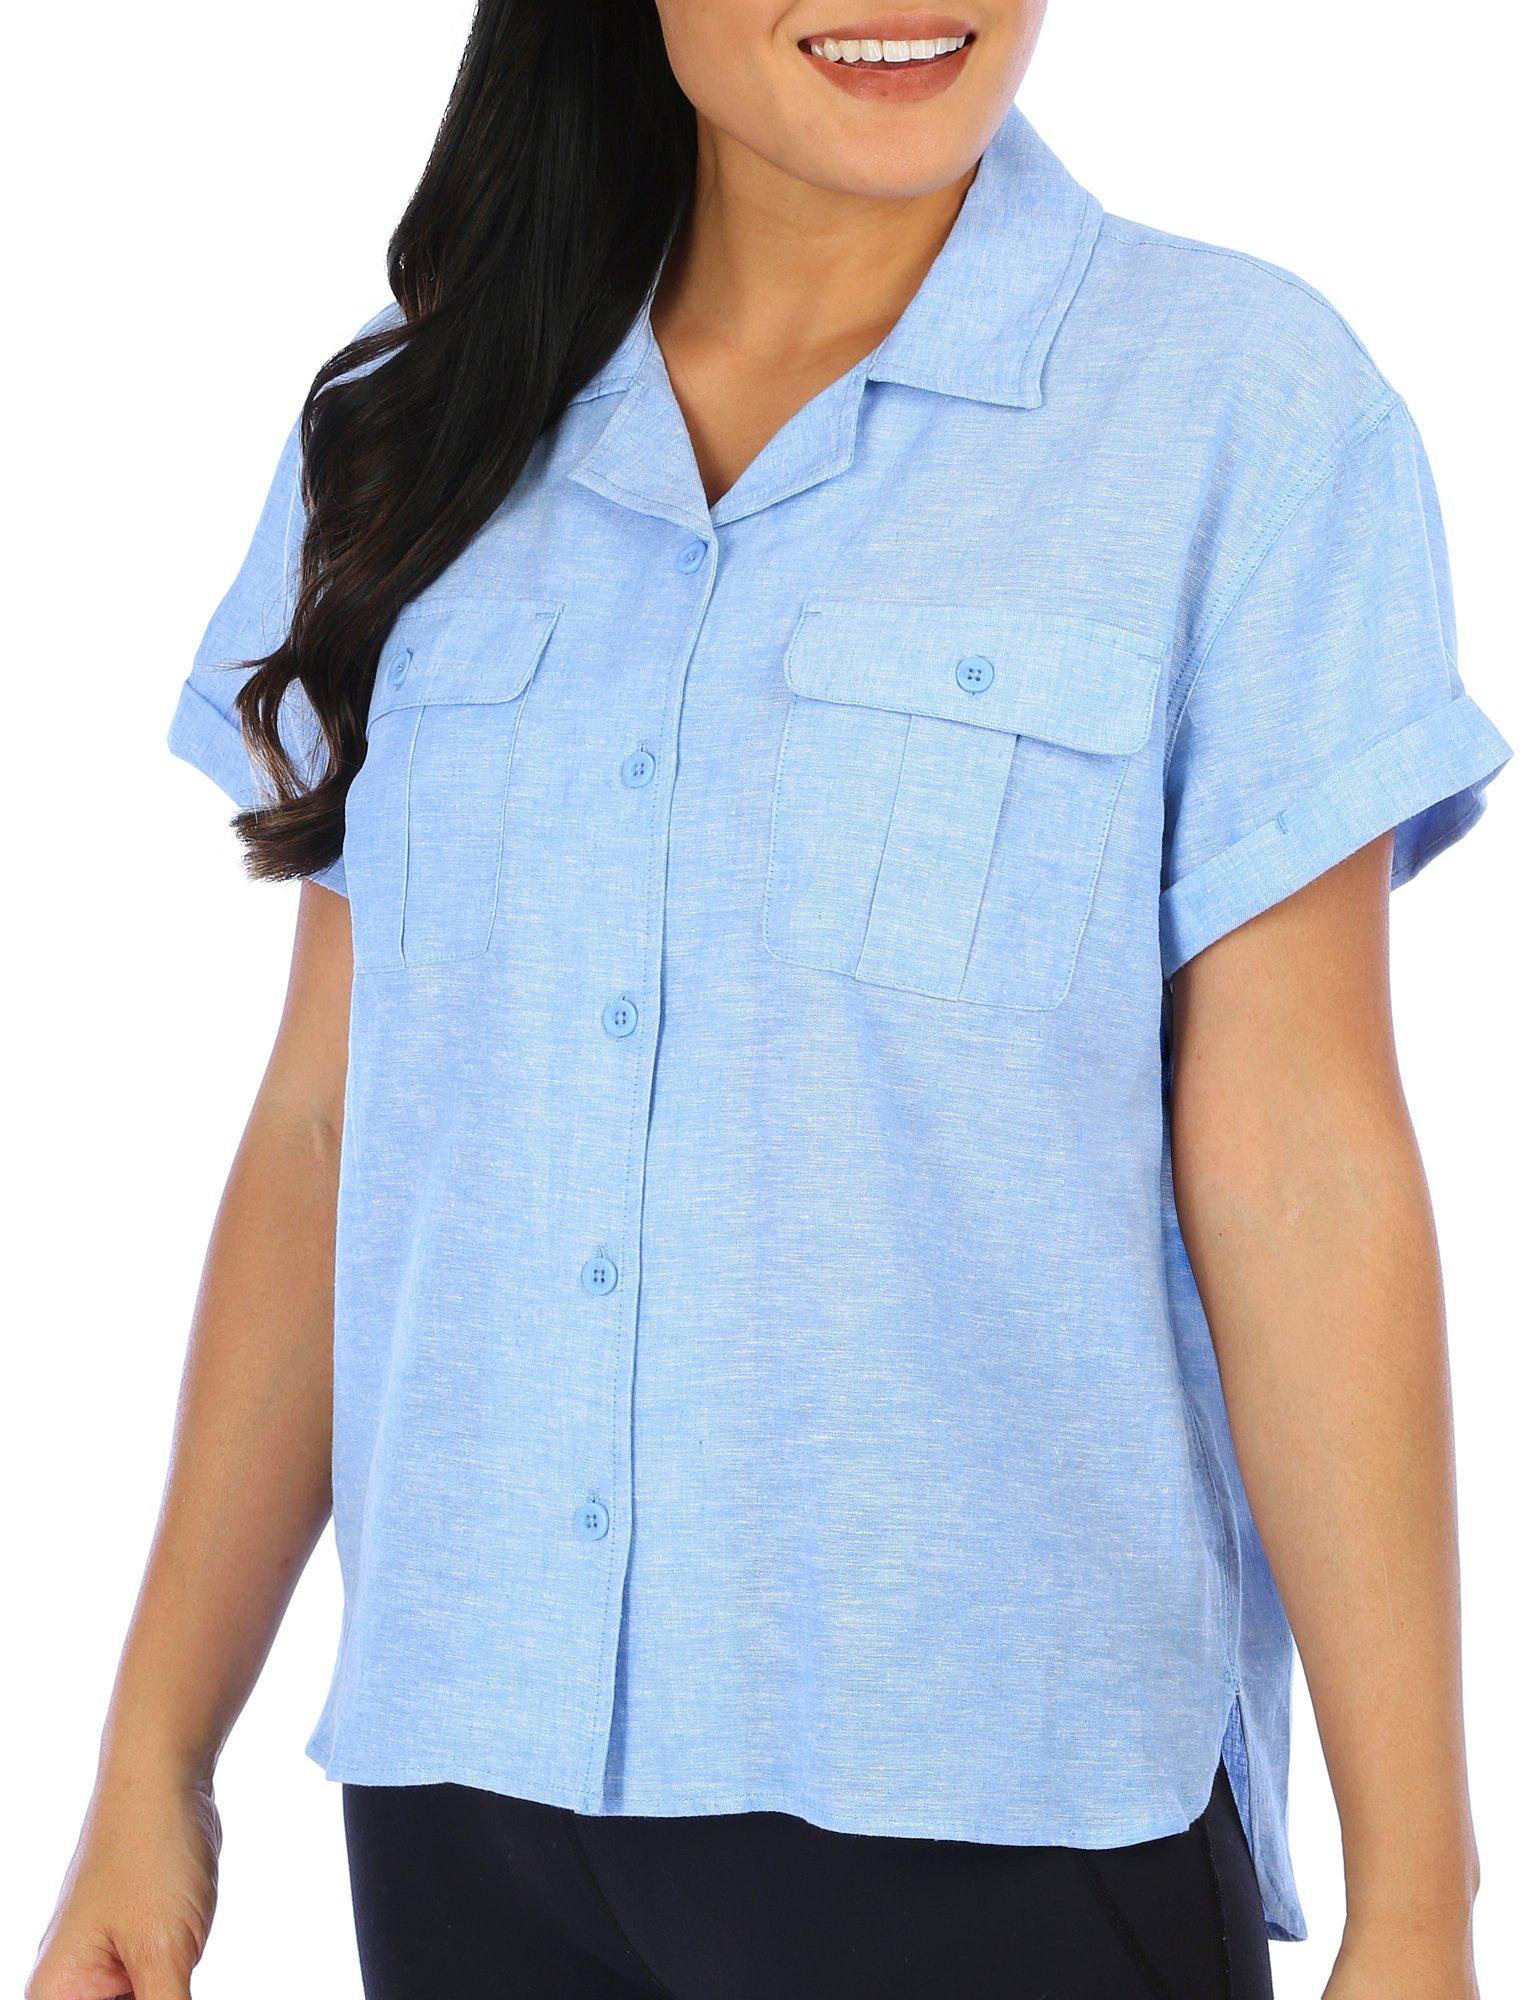 Reel Legends Womens Short Sleeve Cotton Linen Shirt - Marine Blue - Large